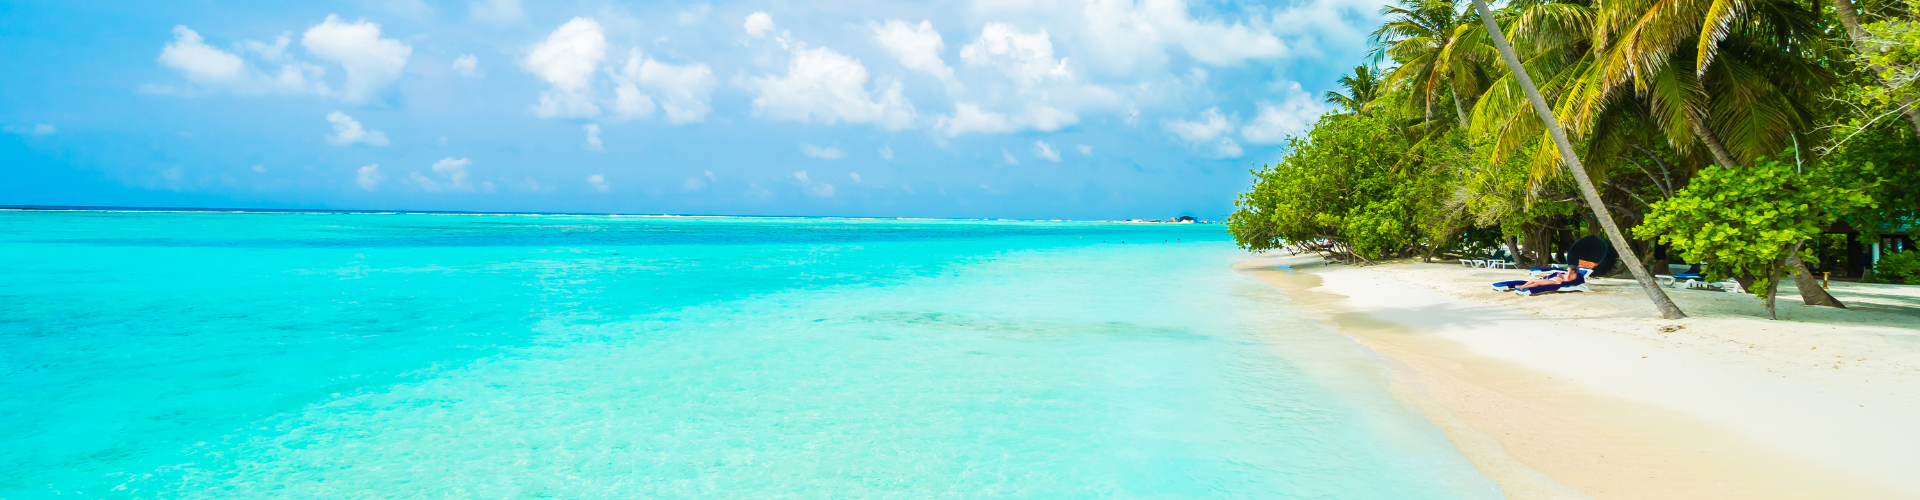 Vista praia - Maldivas